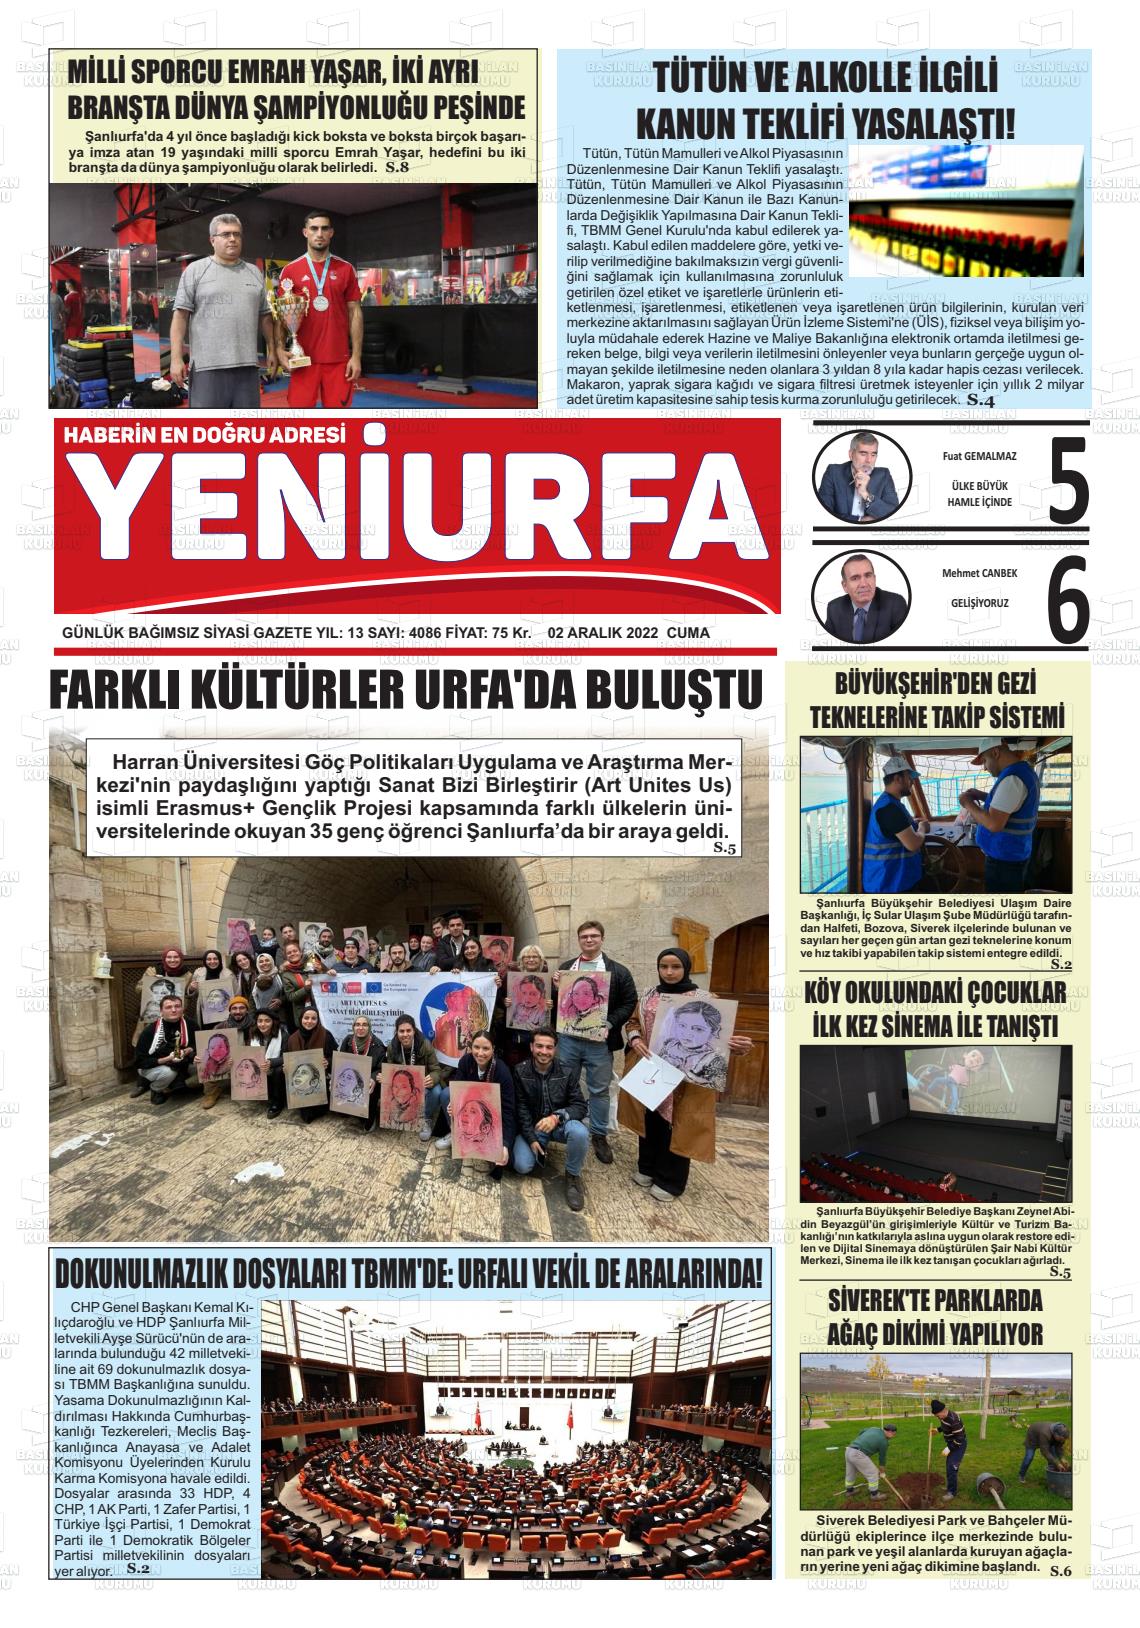 02 Aralık 2022 Yeni Urfa Gazete Manşeti